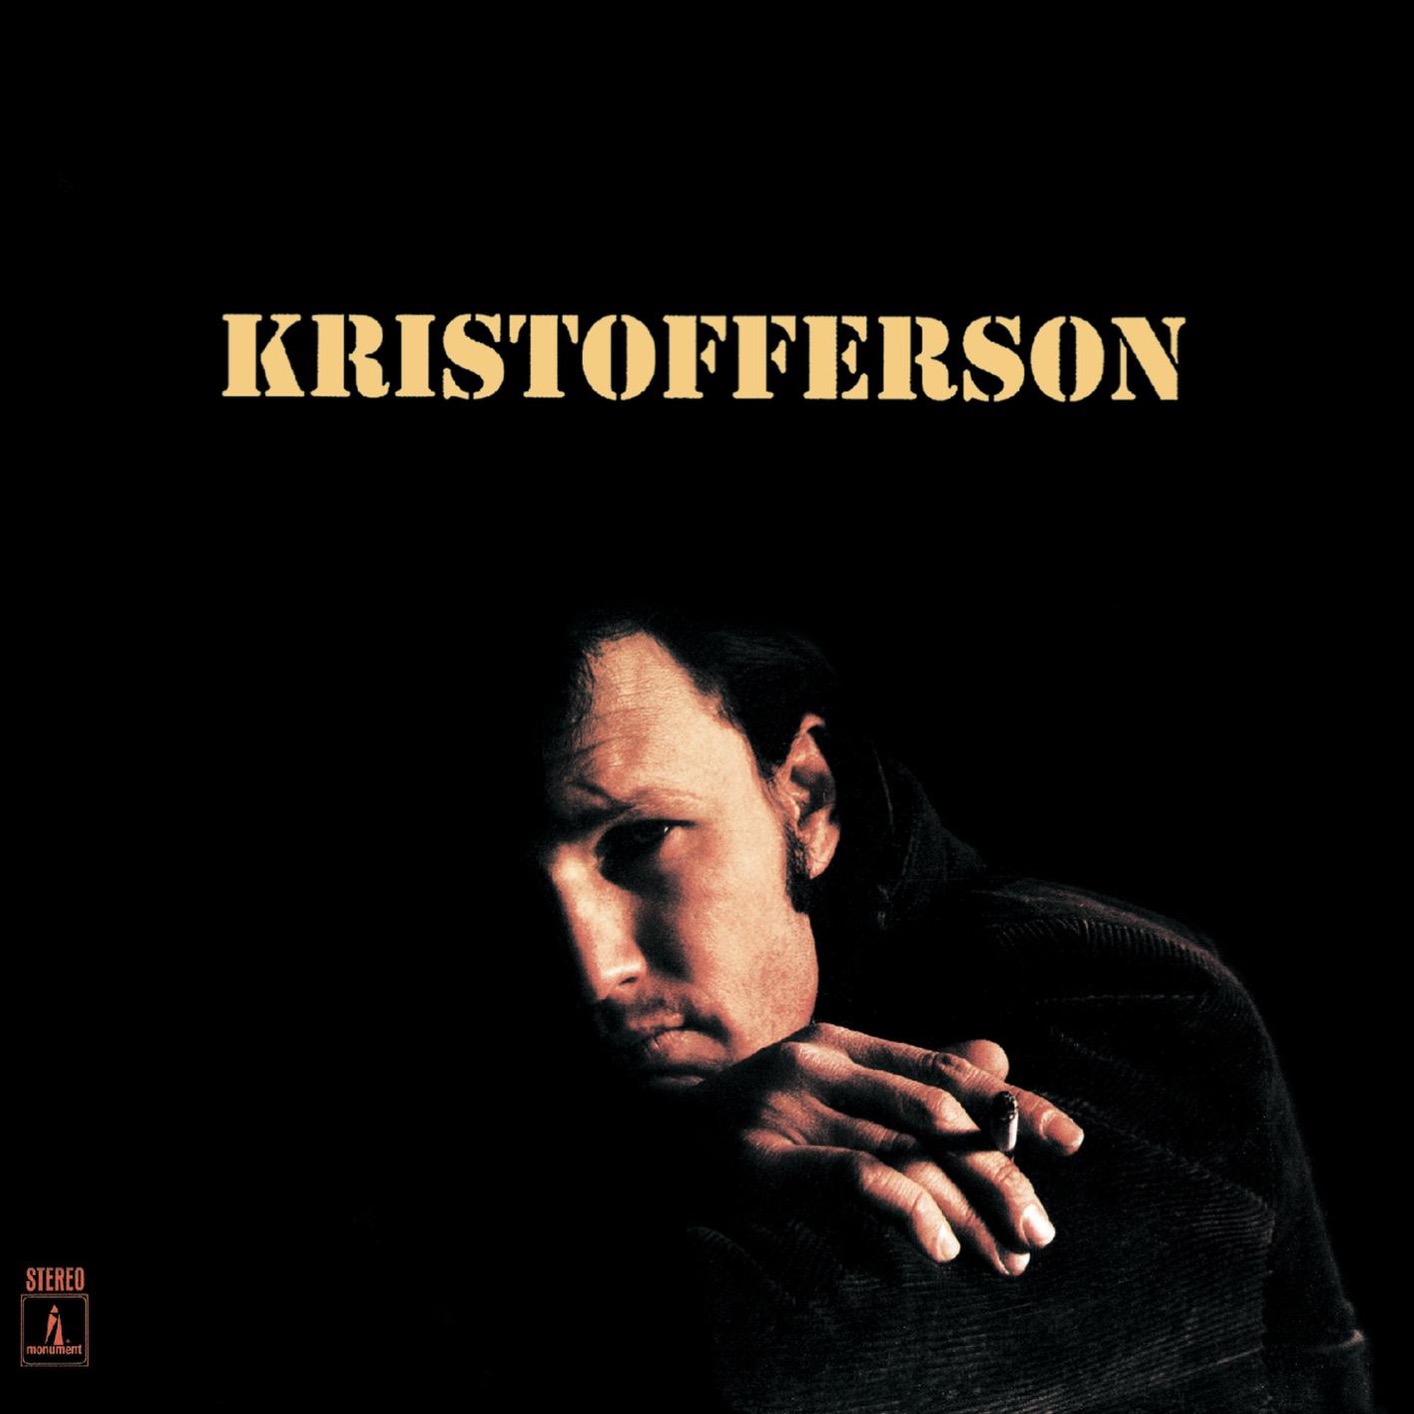 Kris Kristofferson – Kristofferson (1970/2016) [FLAC 24bit/96kHz]